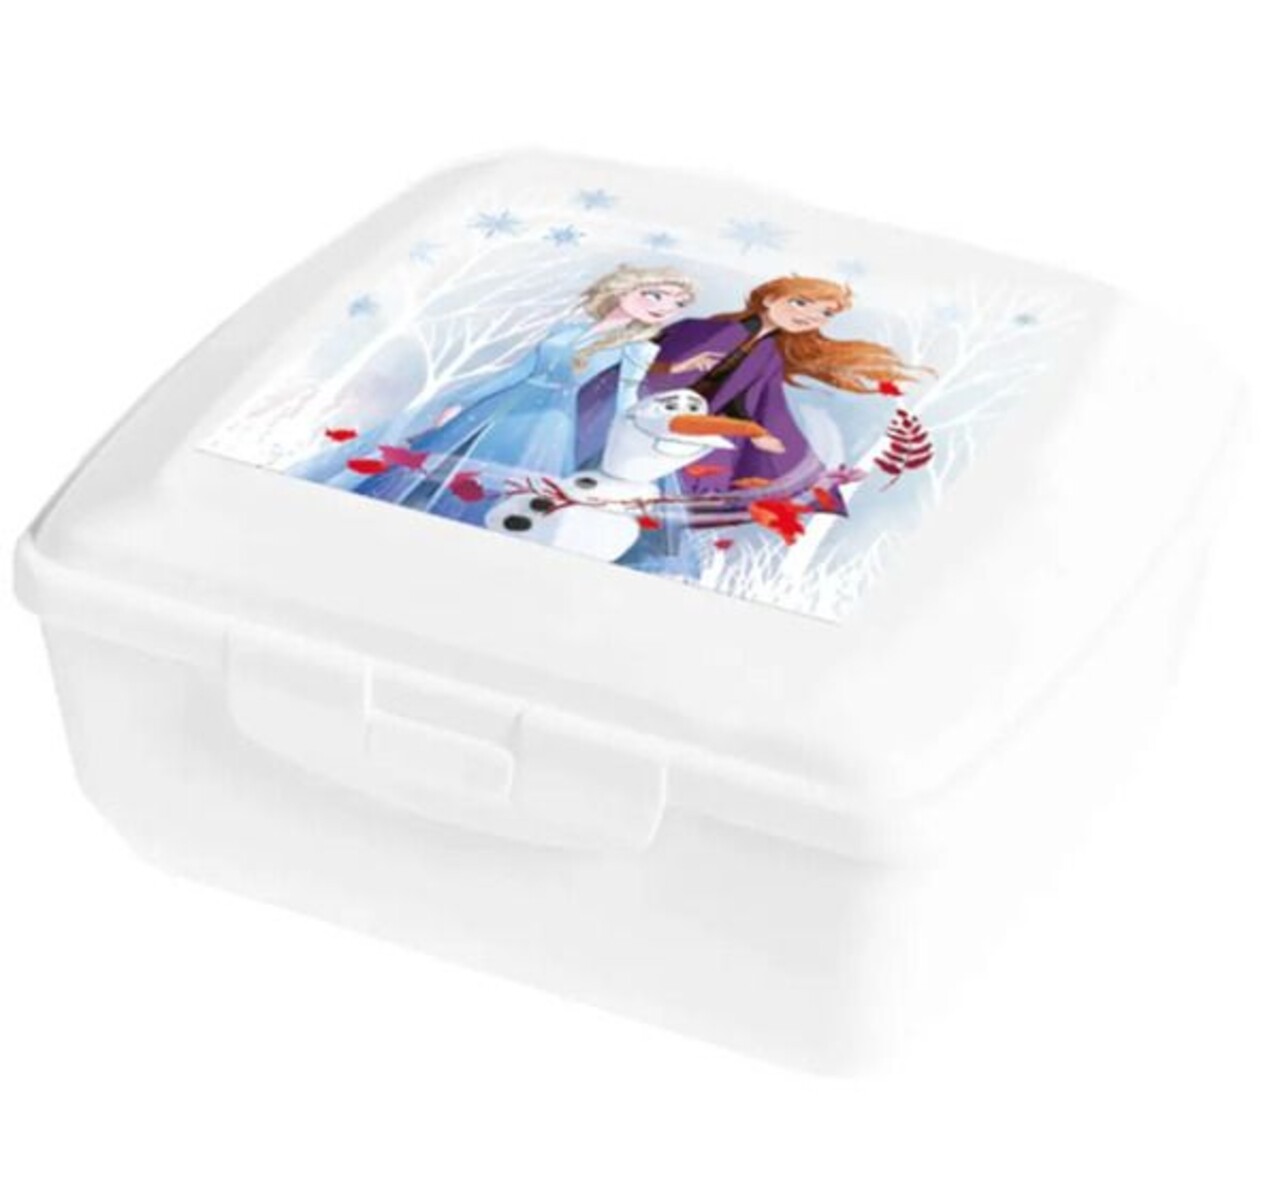 Frozen II szendvicsdoboz, Disney, 13x15x6 cm, műanyag, fehér